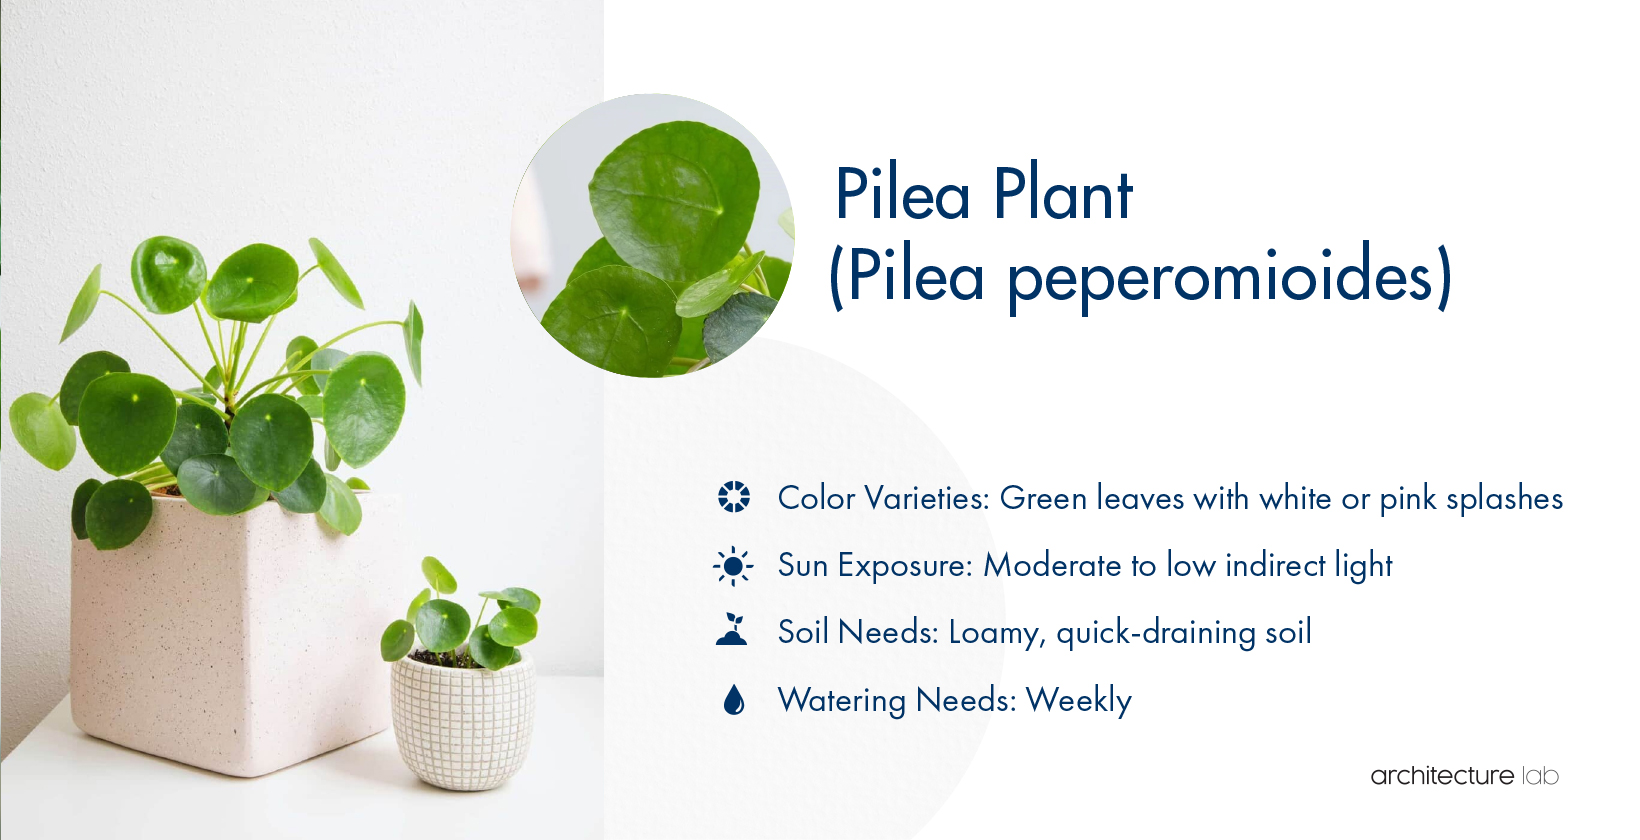 22. Pilea plant (pilea peperomioides)